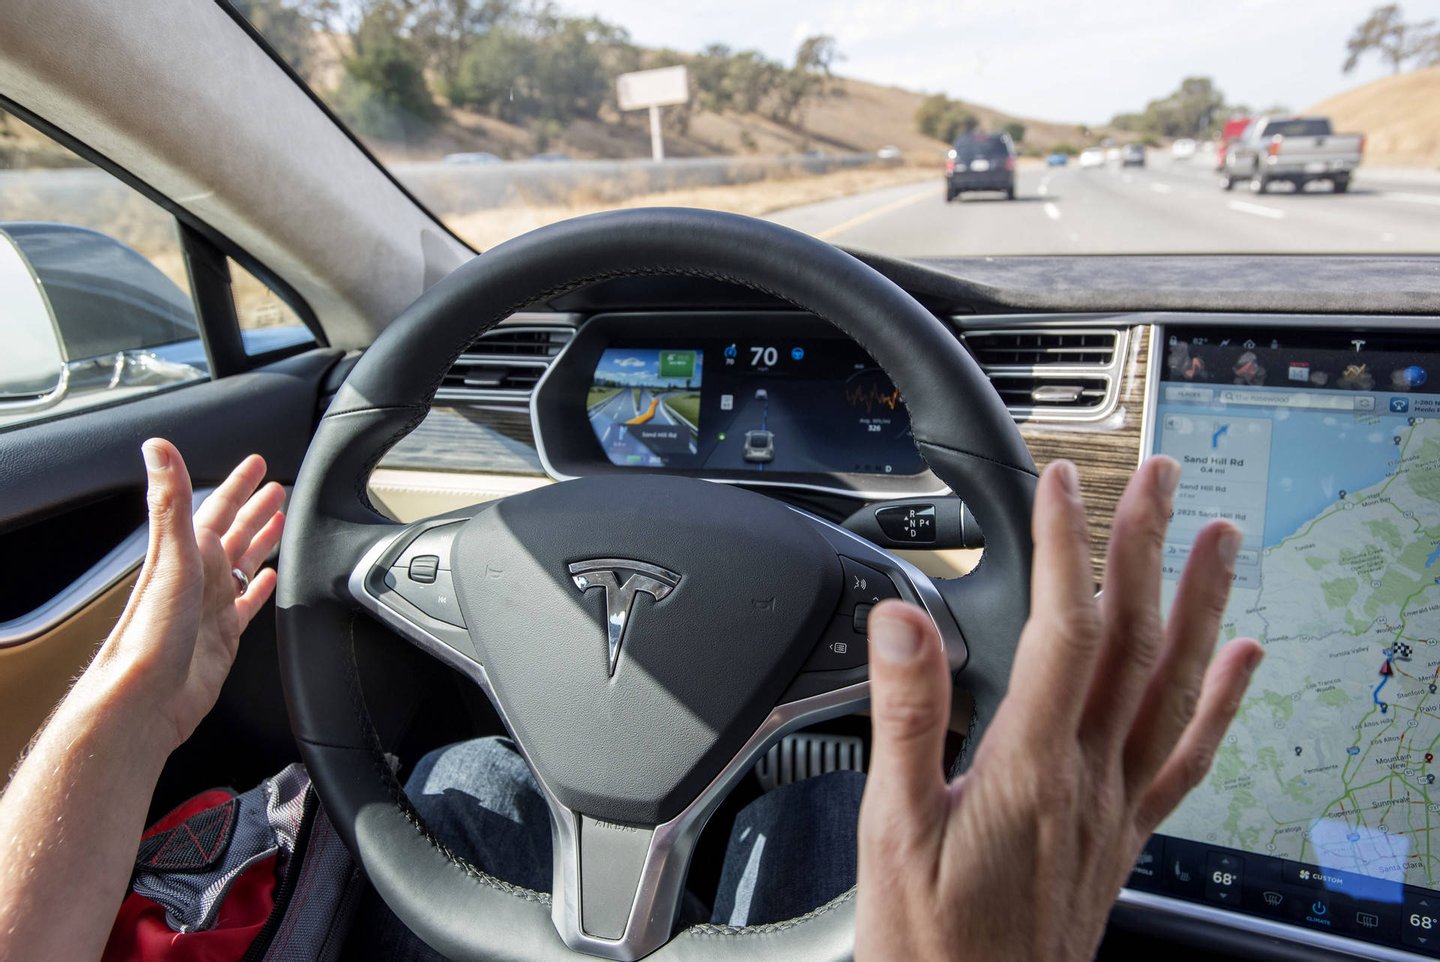 Segundo Elon Musk, o hardware de que os Tesla passam a dispor nada tem que ver com o Autopilot (na foto). Trata-se de algo completamente novo